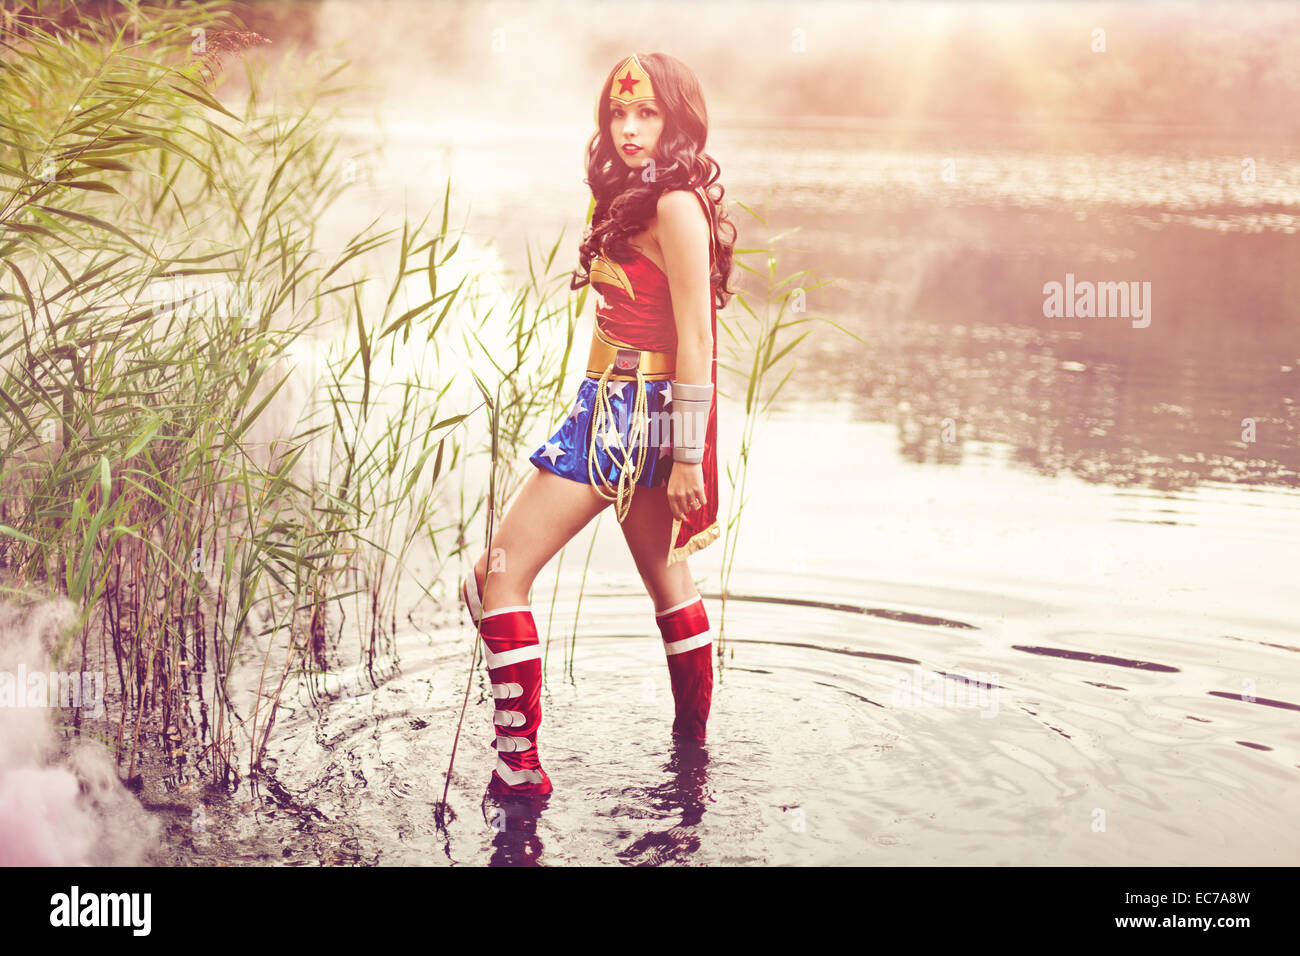 Déguisement pour femme super-héroïne Wonder-Woman carnaval